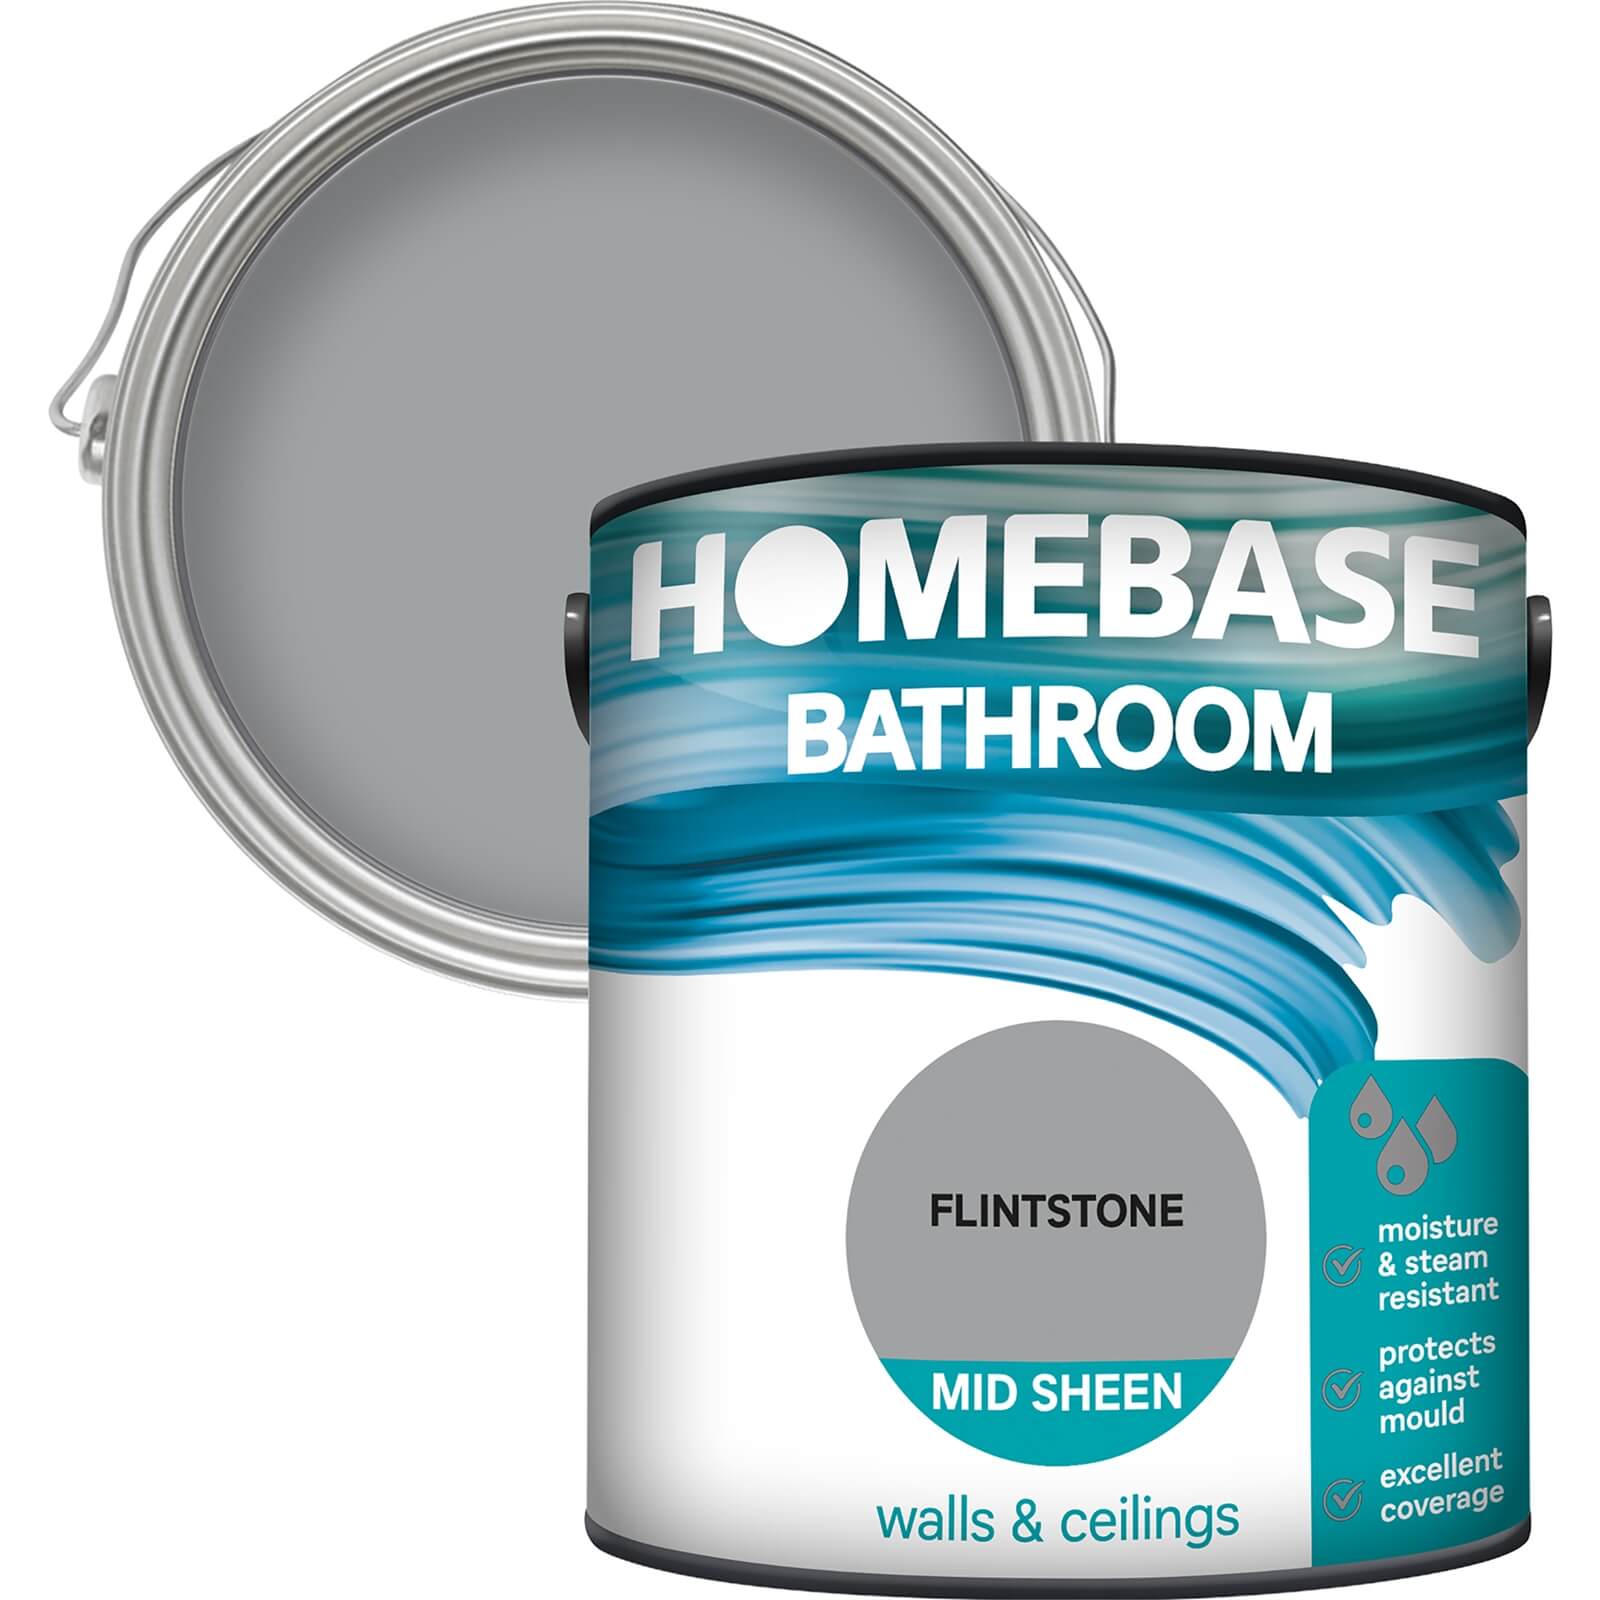 Homebase Bathroom Mid Sheen Paint - Fintstone 2.5L